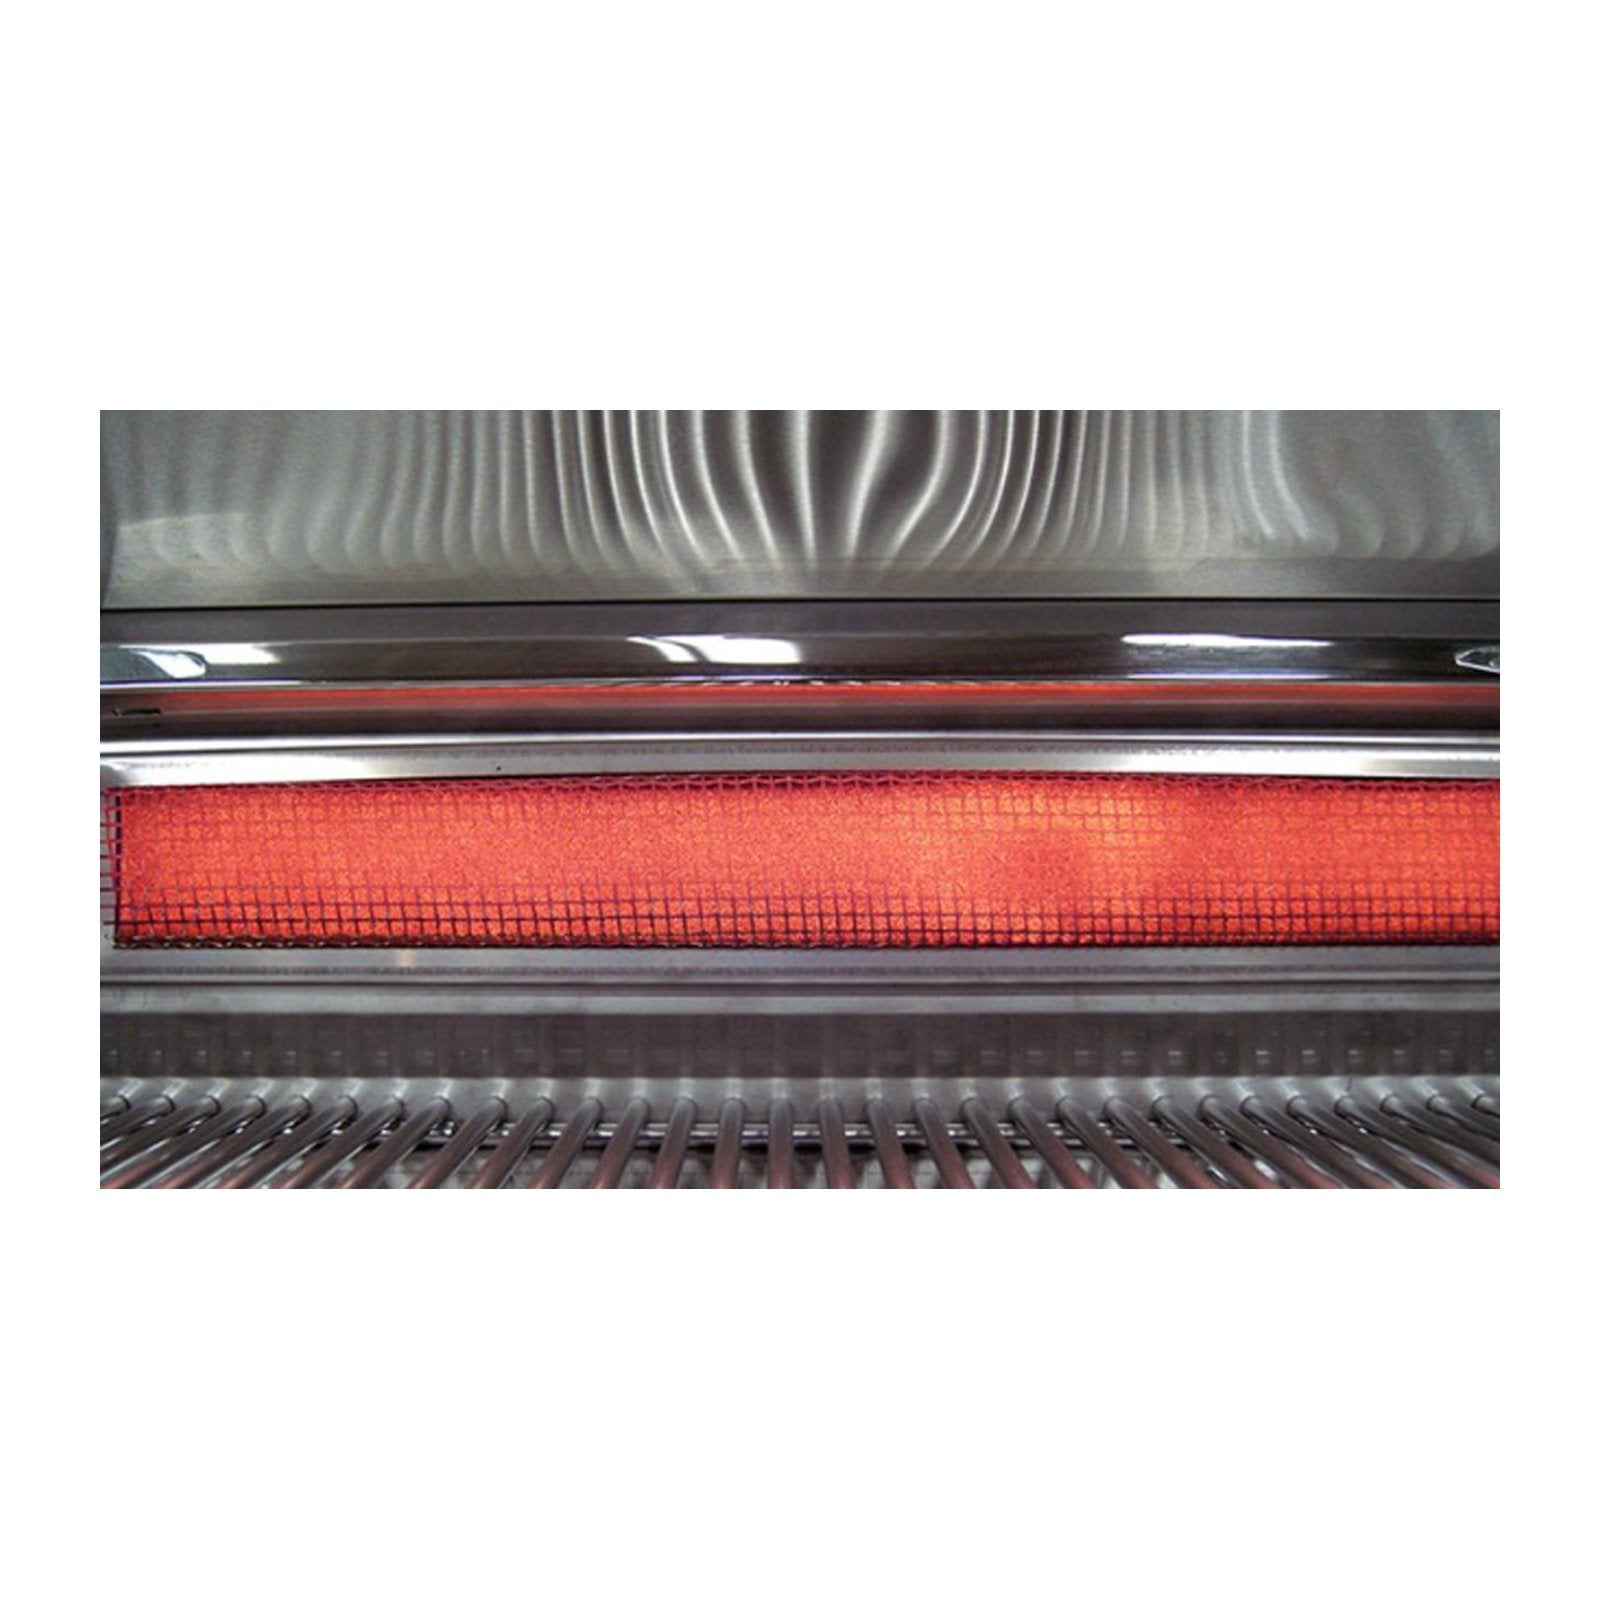 fire-magic-30-e660i-built-in-grill-w-infra-burner-rotiss-digi-display-window 10